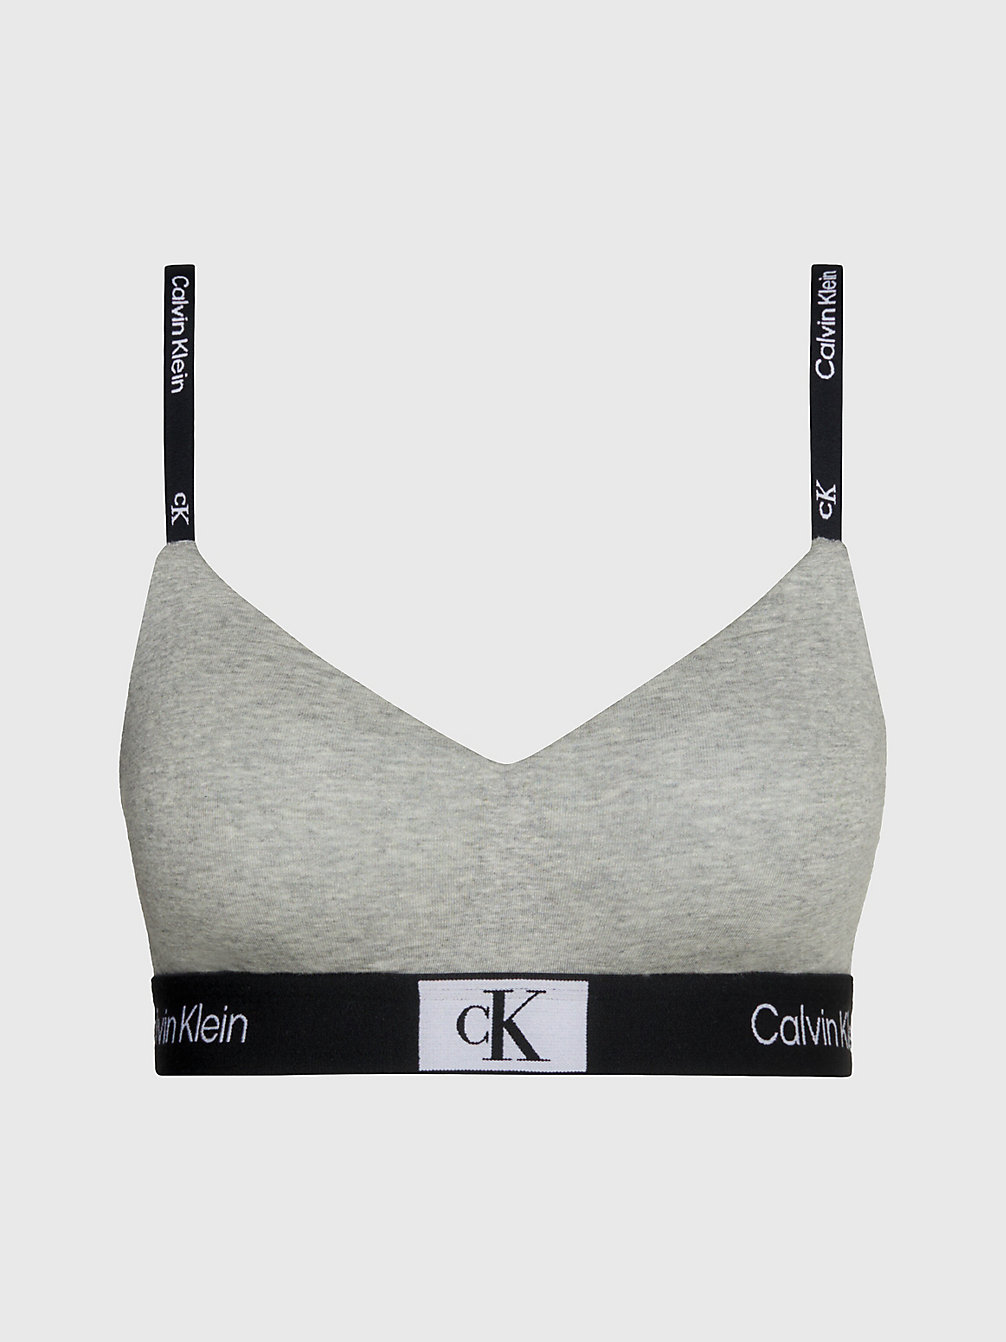 GREY HEATHER > String Bralette - Ck96 > undefined Женщины - Calvin Klein